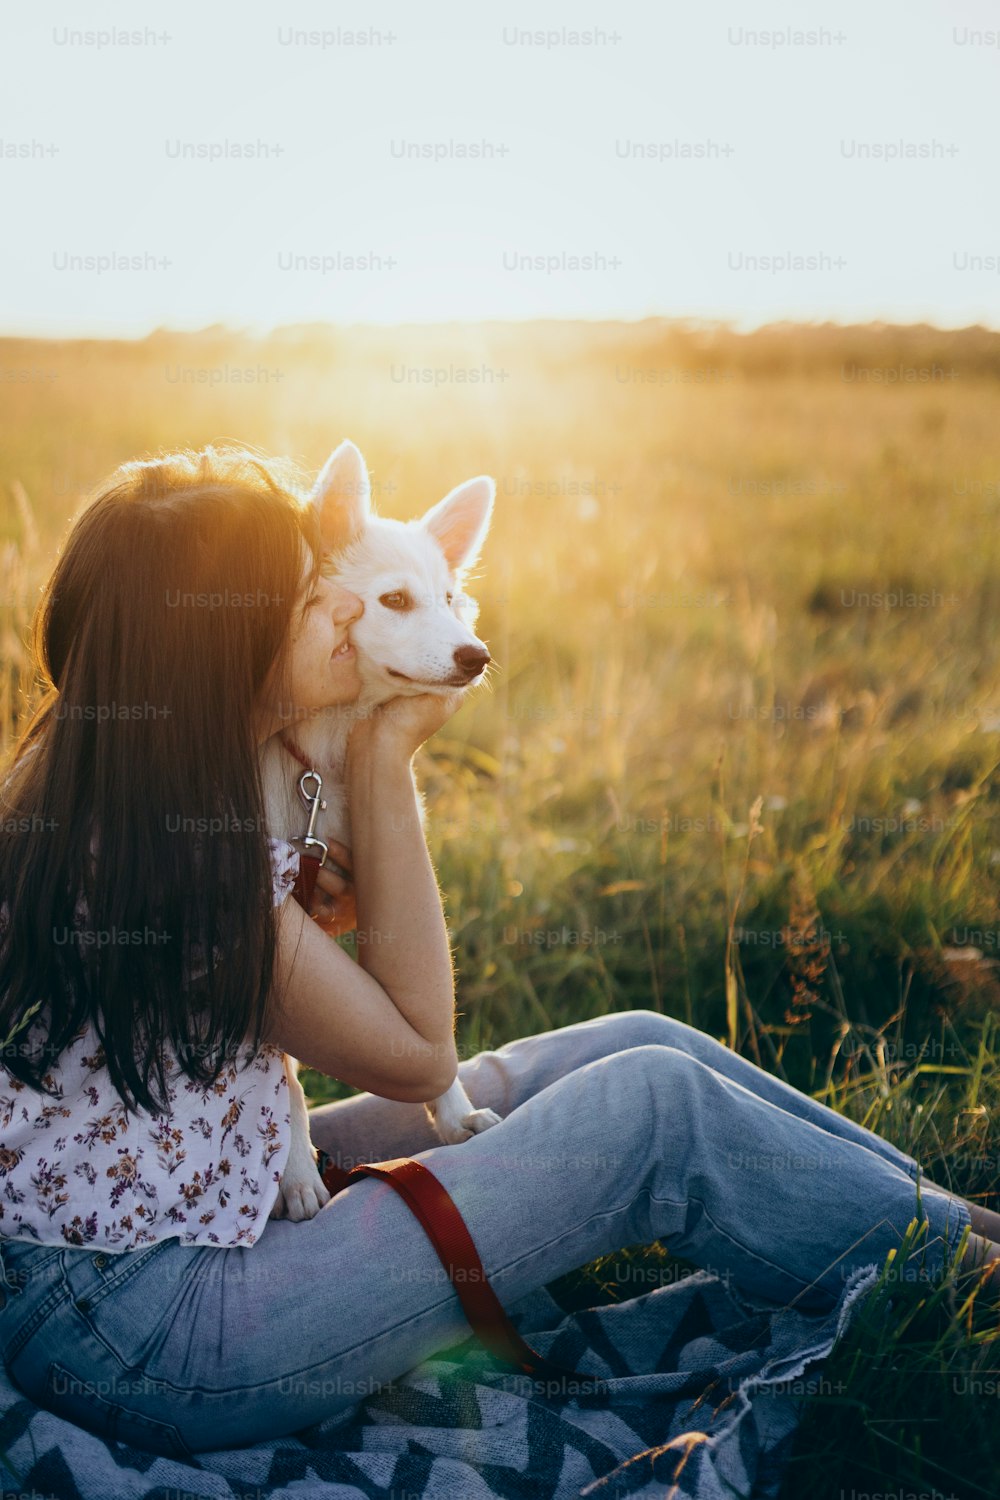 애완 동물과 함께 여름 여행. 해질녘 빛 아래 여름 초원에서 귀여운 하얀 강아지를 껴안고 있는 행복한 여자. 대기 순간. 피크닉에서 사랑스러운 푹신한 강아지와 함께 휴식을 취하는 세련된 소녀.